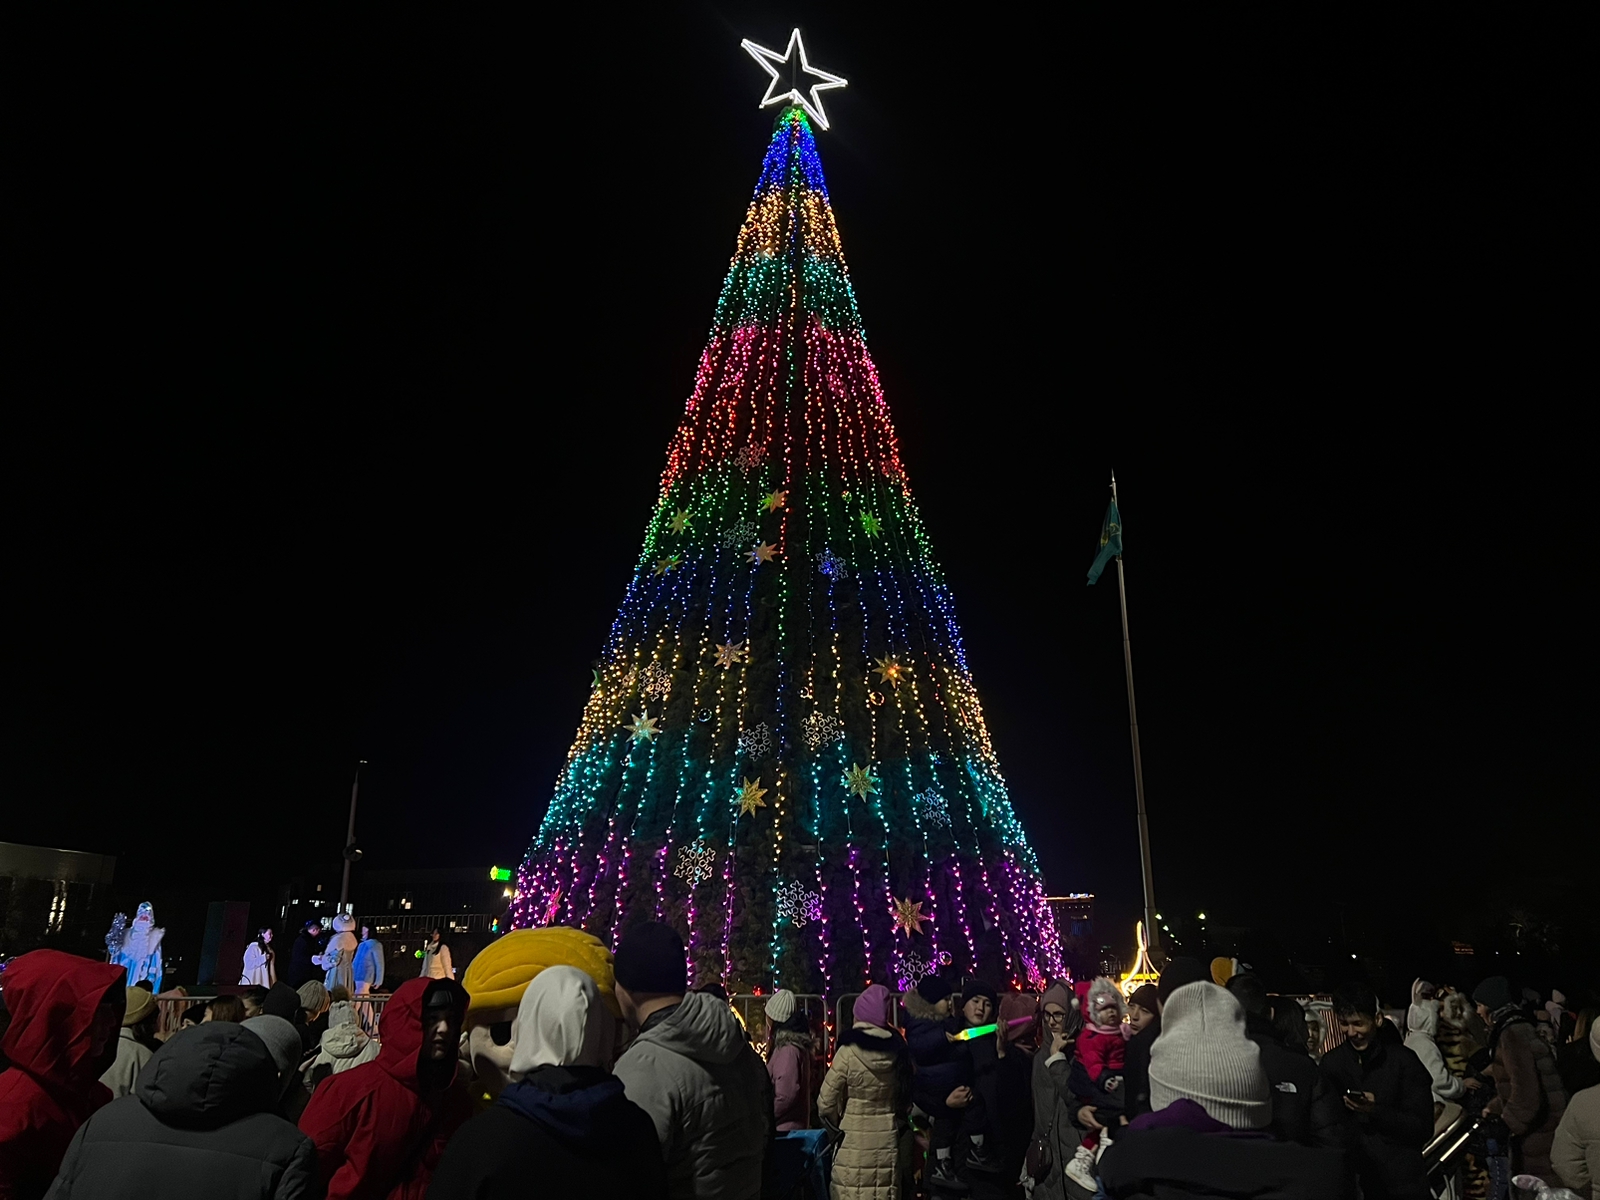 A New Year tree was lit in Aktau